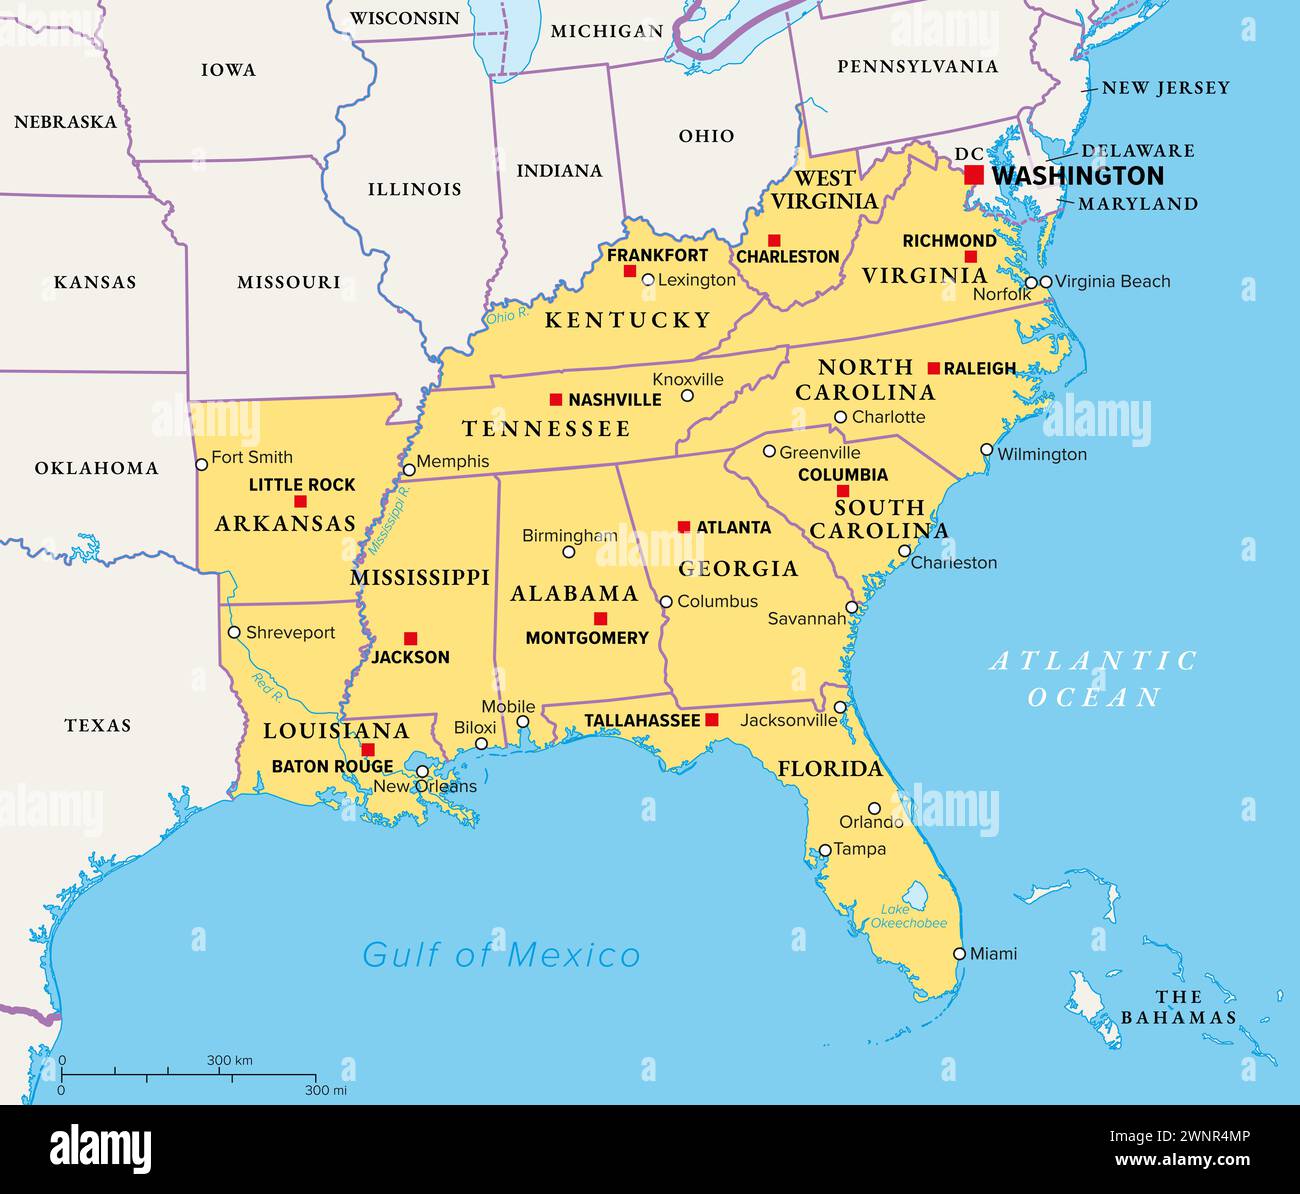 Südostregion, Süden der Vereinigten Staaten, politische Karte. Geographische und kulturelle Region, auch als Südstaaten der Vereinigten Staaten bezeichnet. Stockfoto